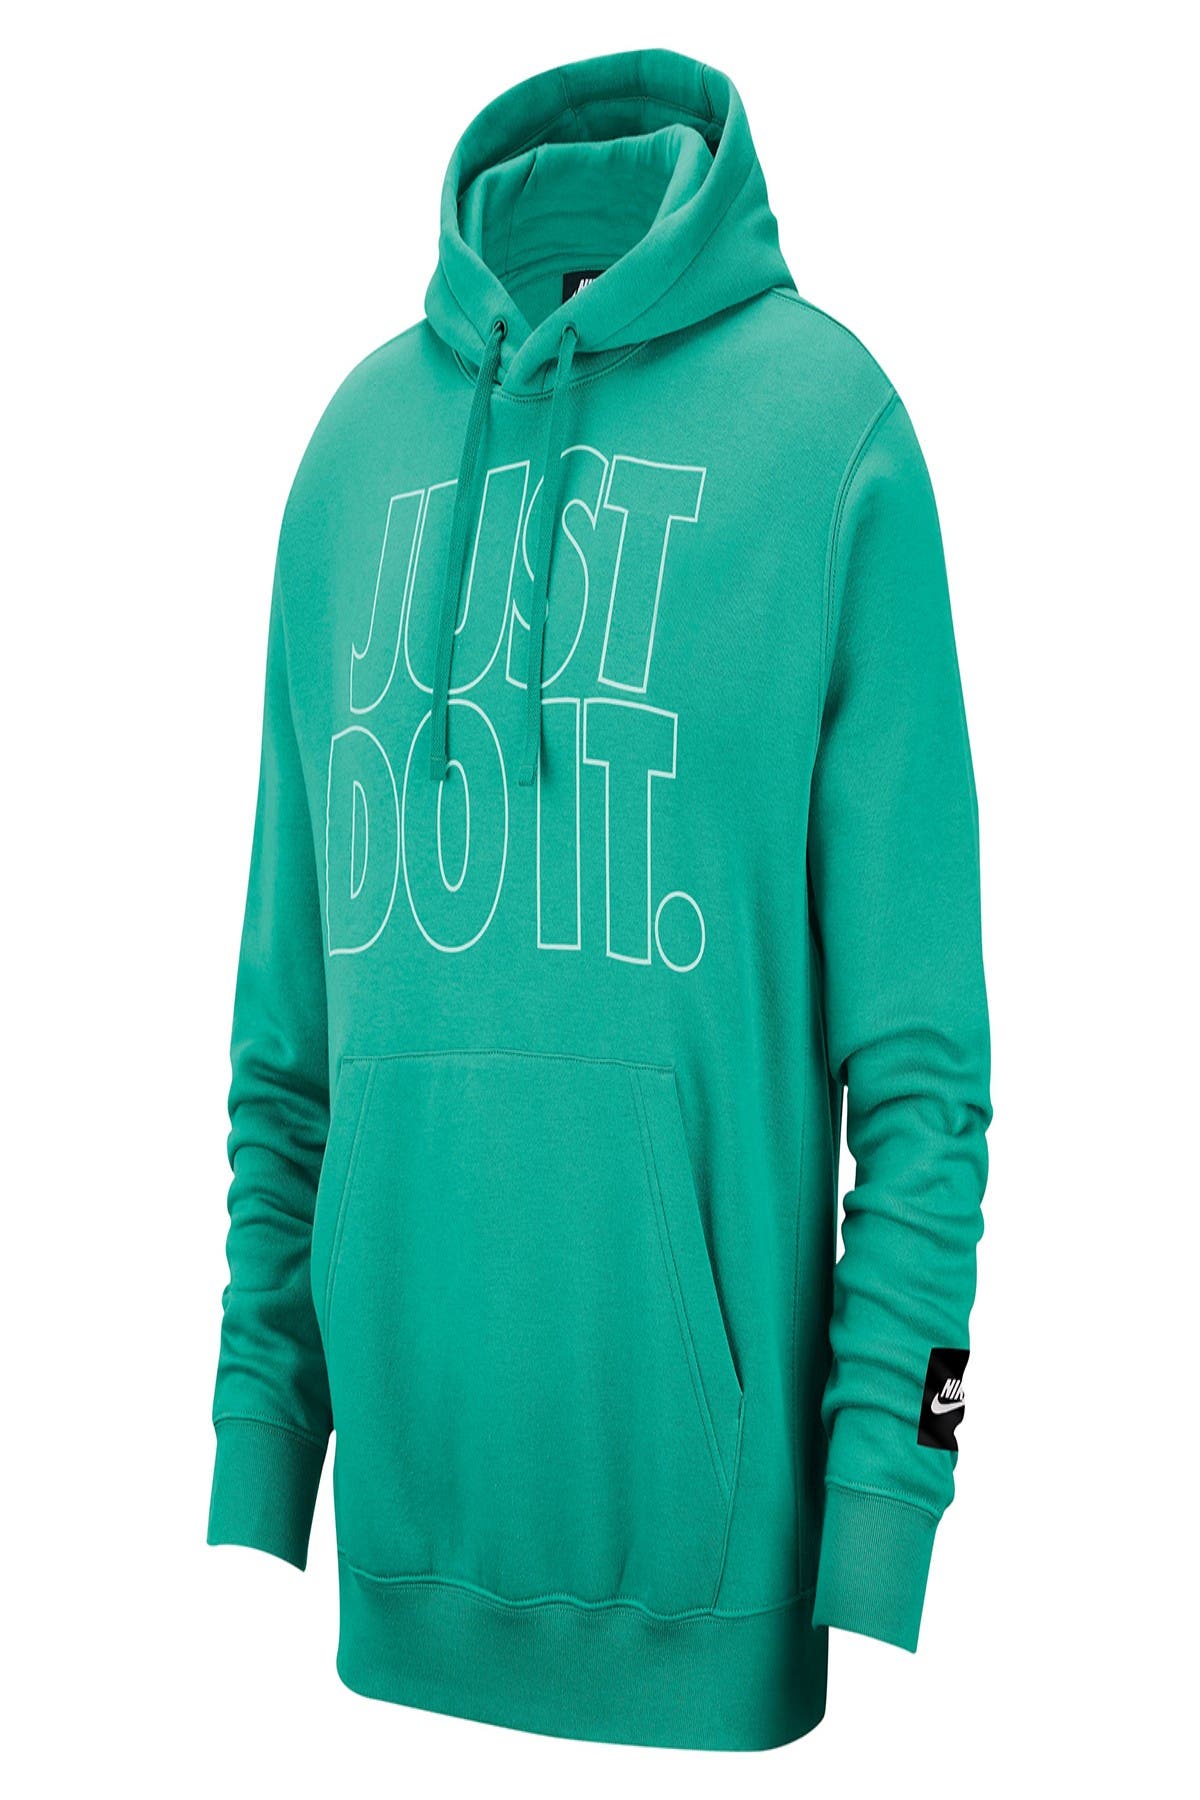 Nike | Just Do It Pullover Hoodie | Nordstrom Rack